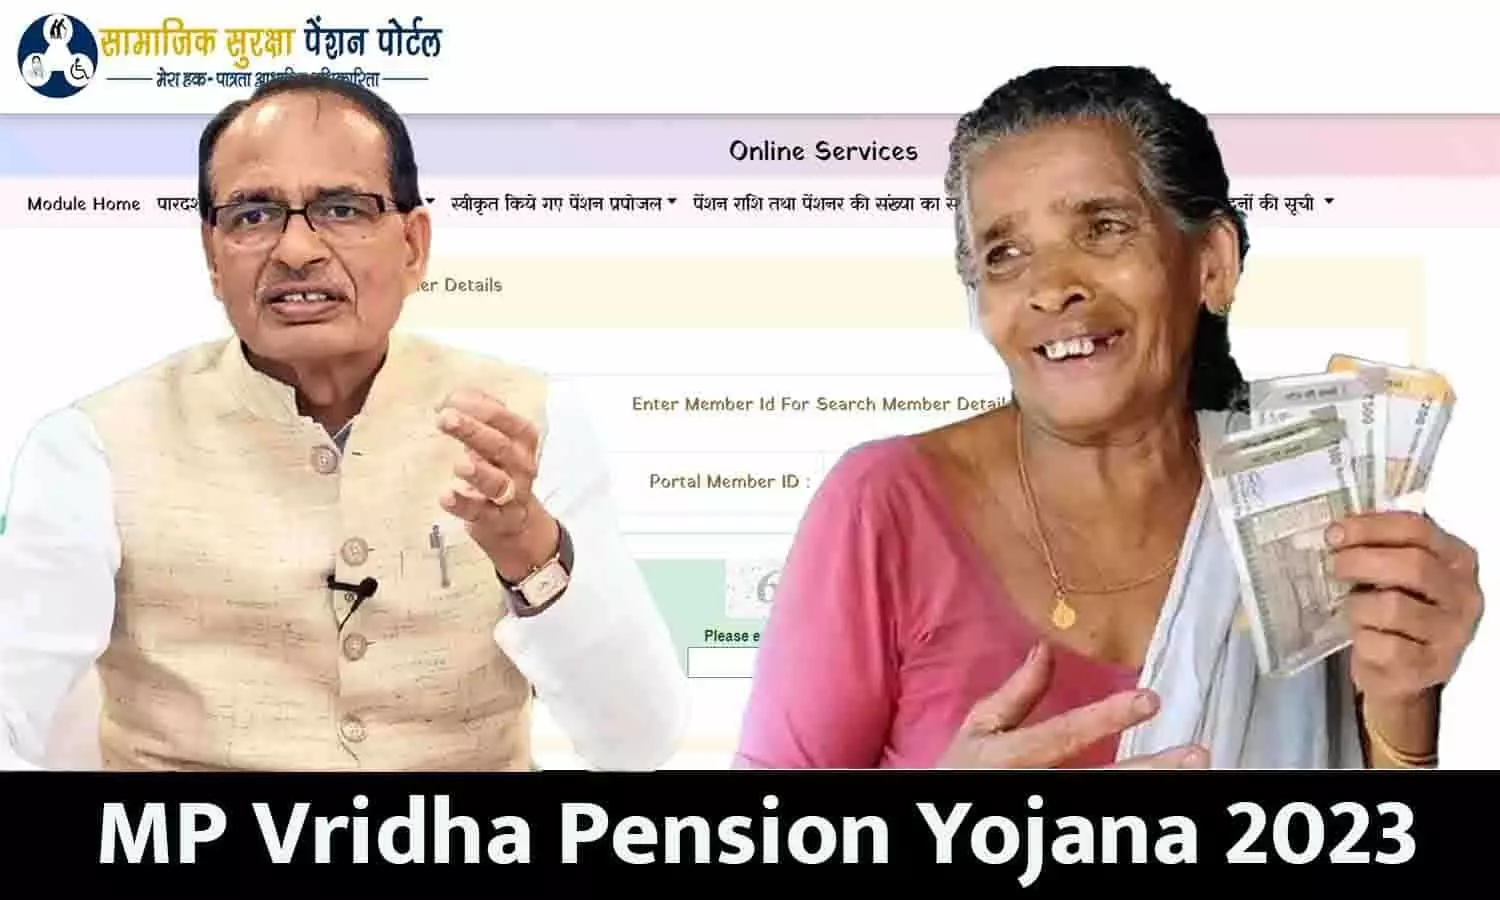 MP Vridha Pension Yojana 2023